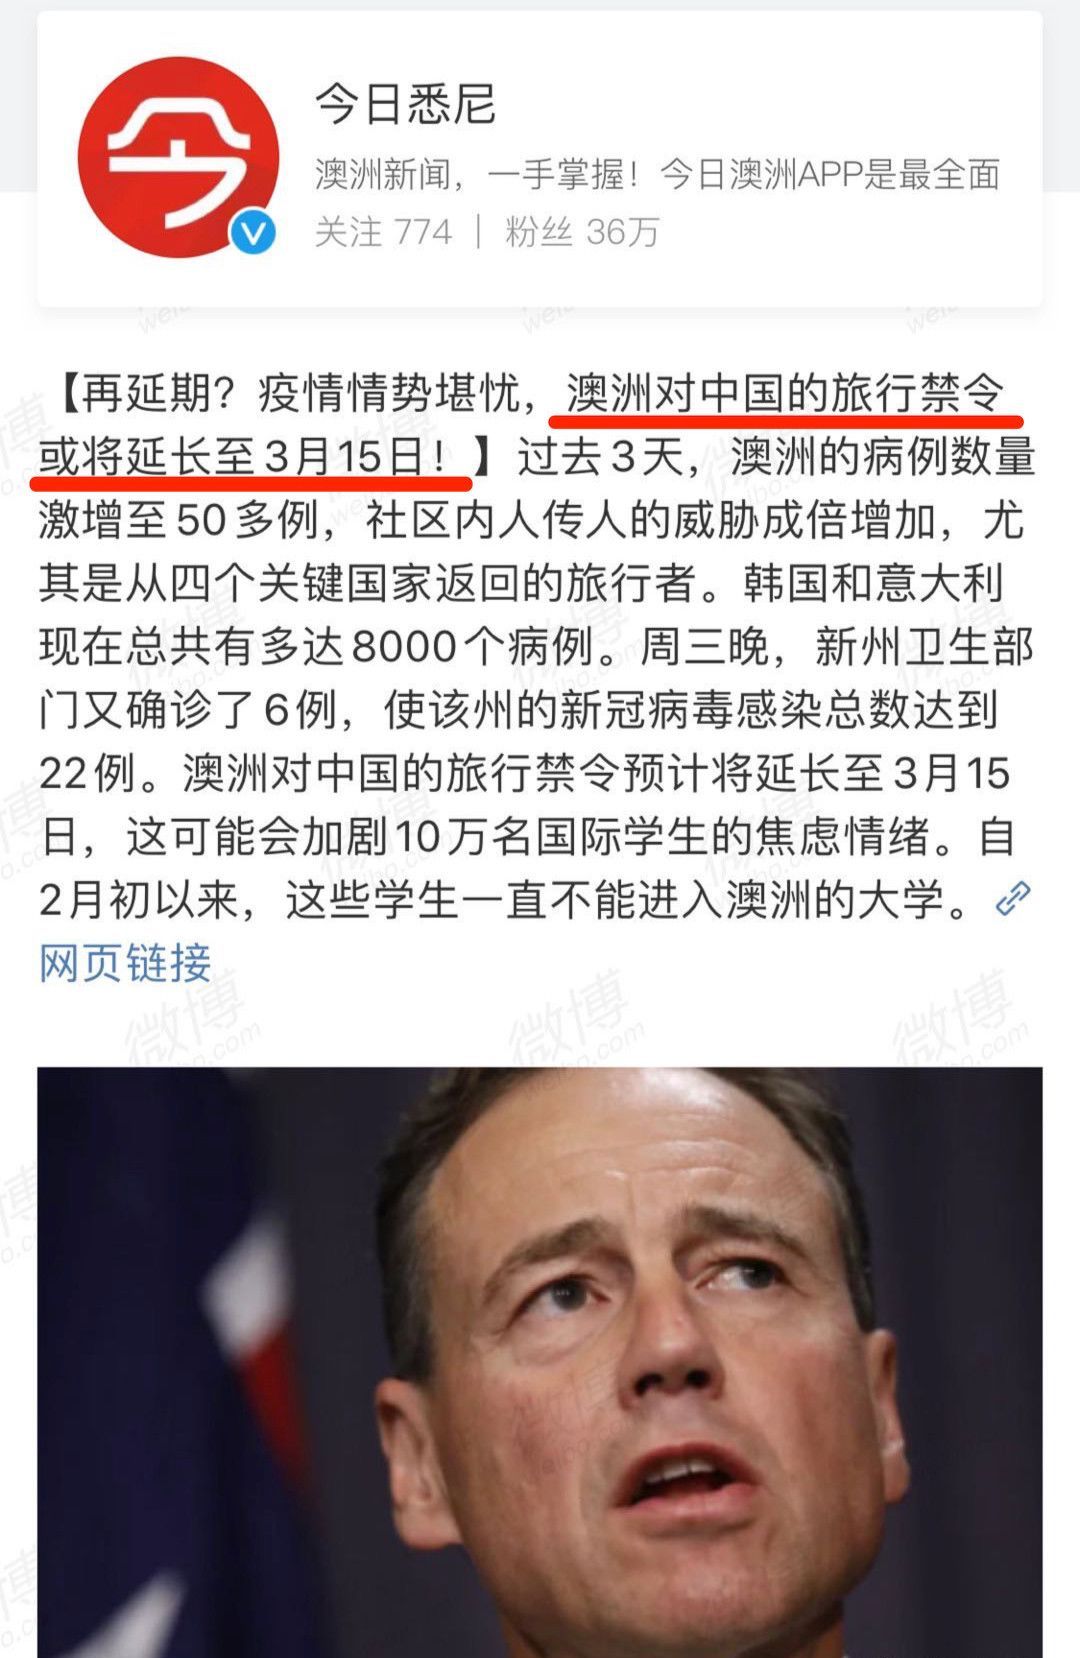 再延期！澳洲对中国的禁令再延长一周至3月15日！后续或再延期！